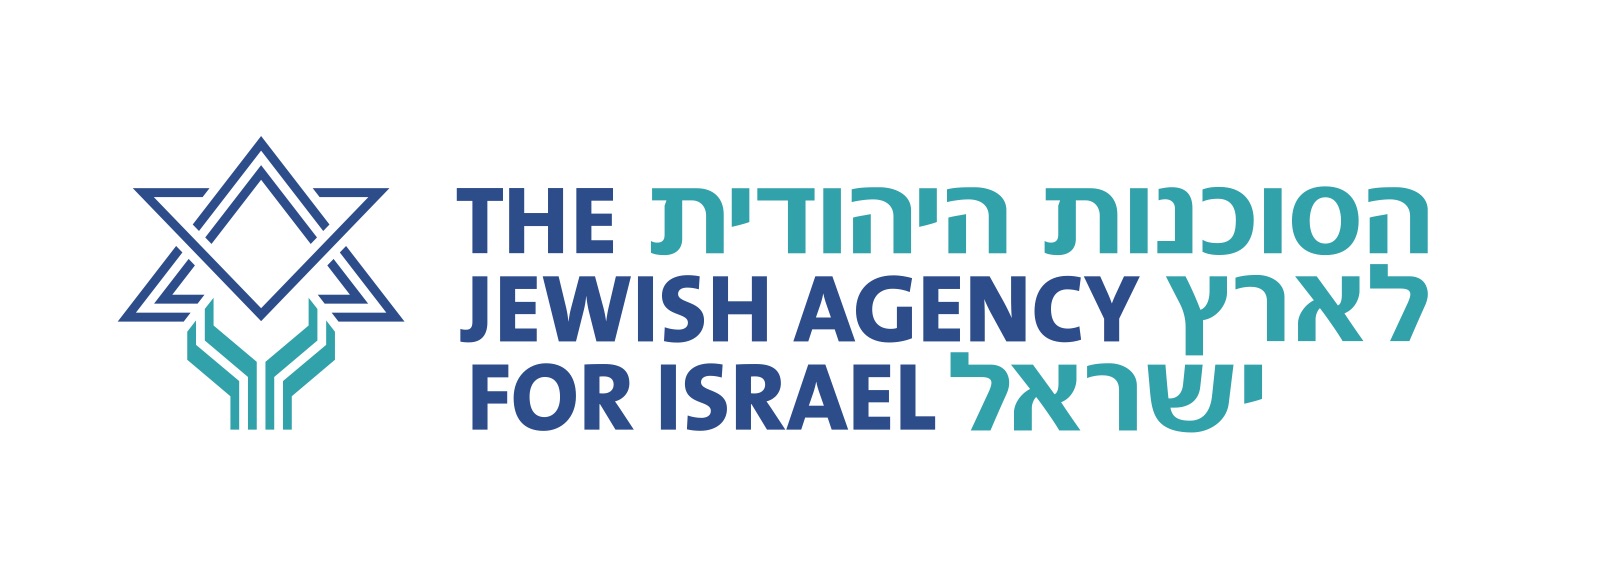 Репатриация в израиль и документы | адвокат в израиле артур блаер